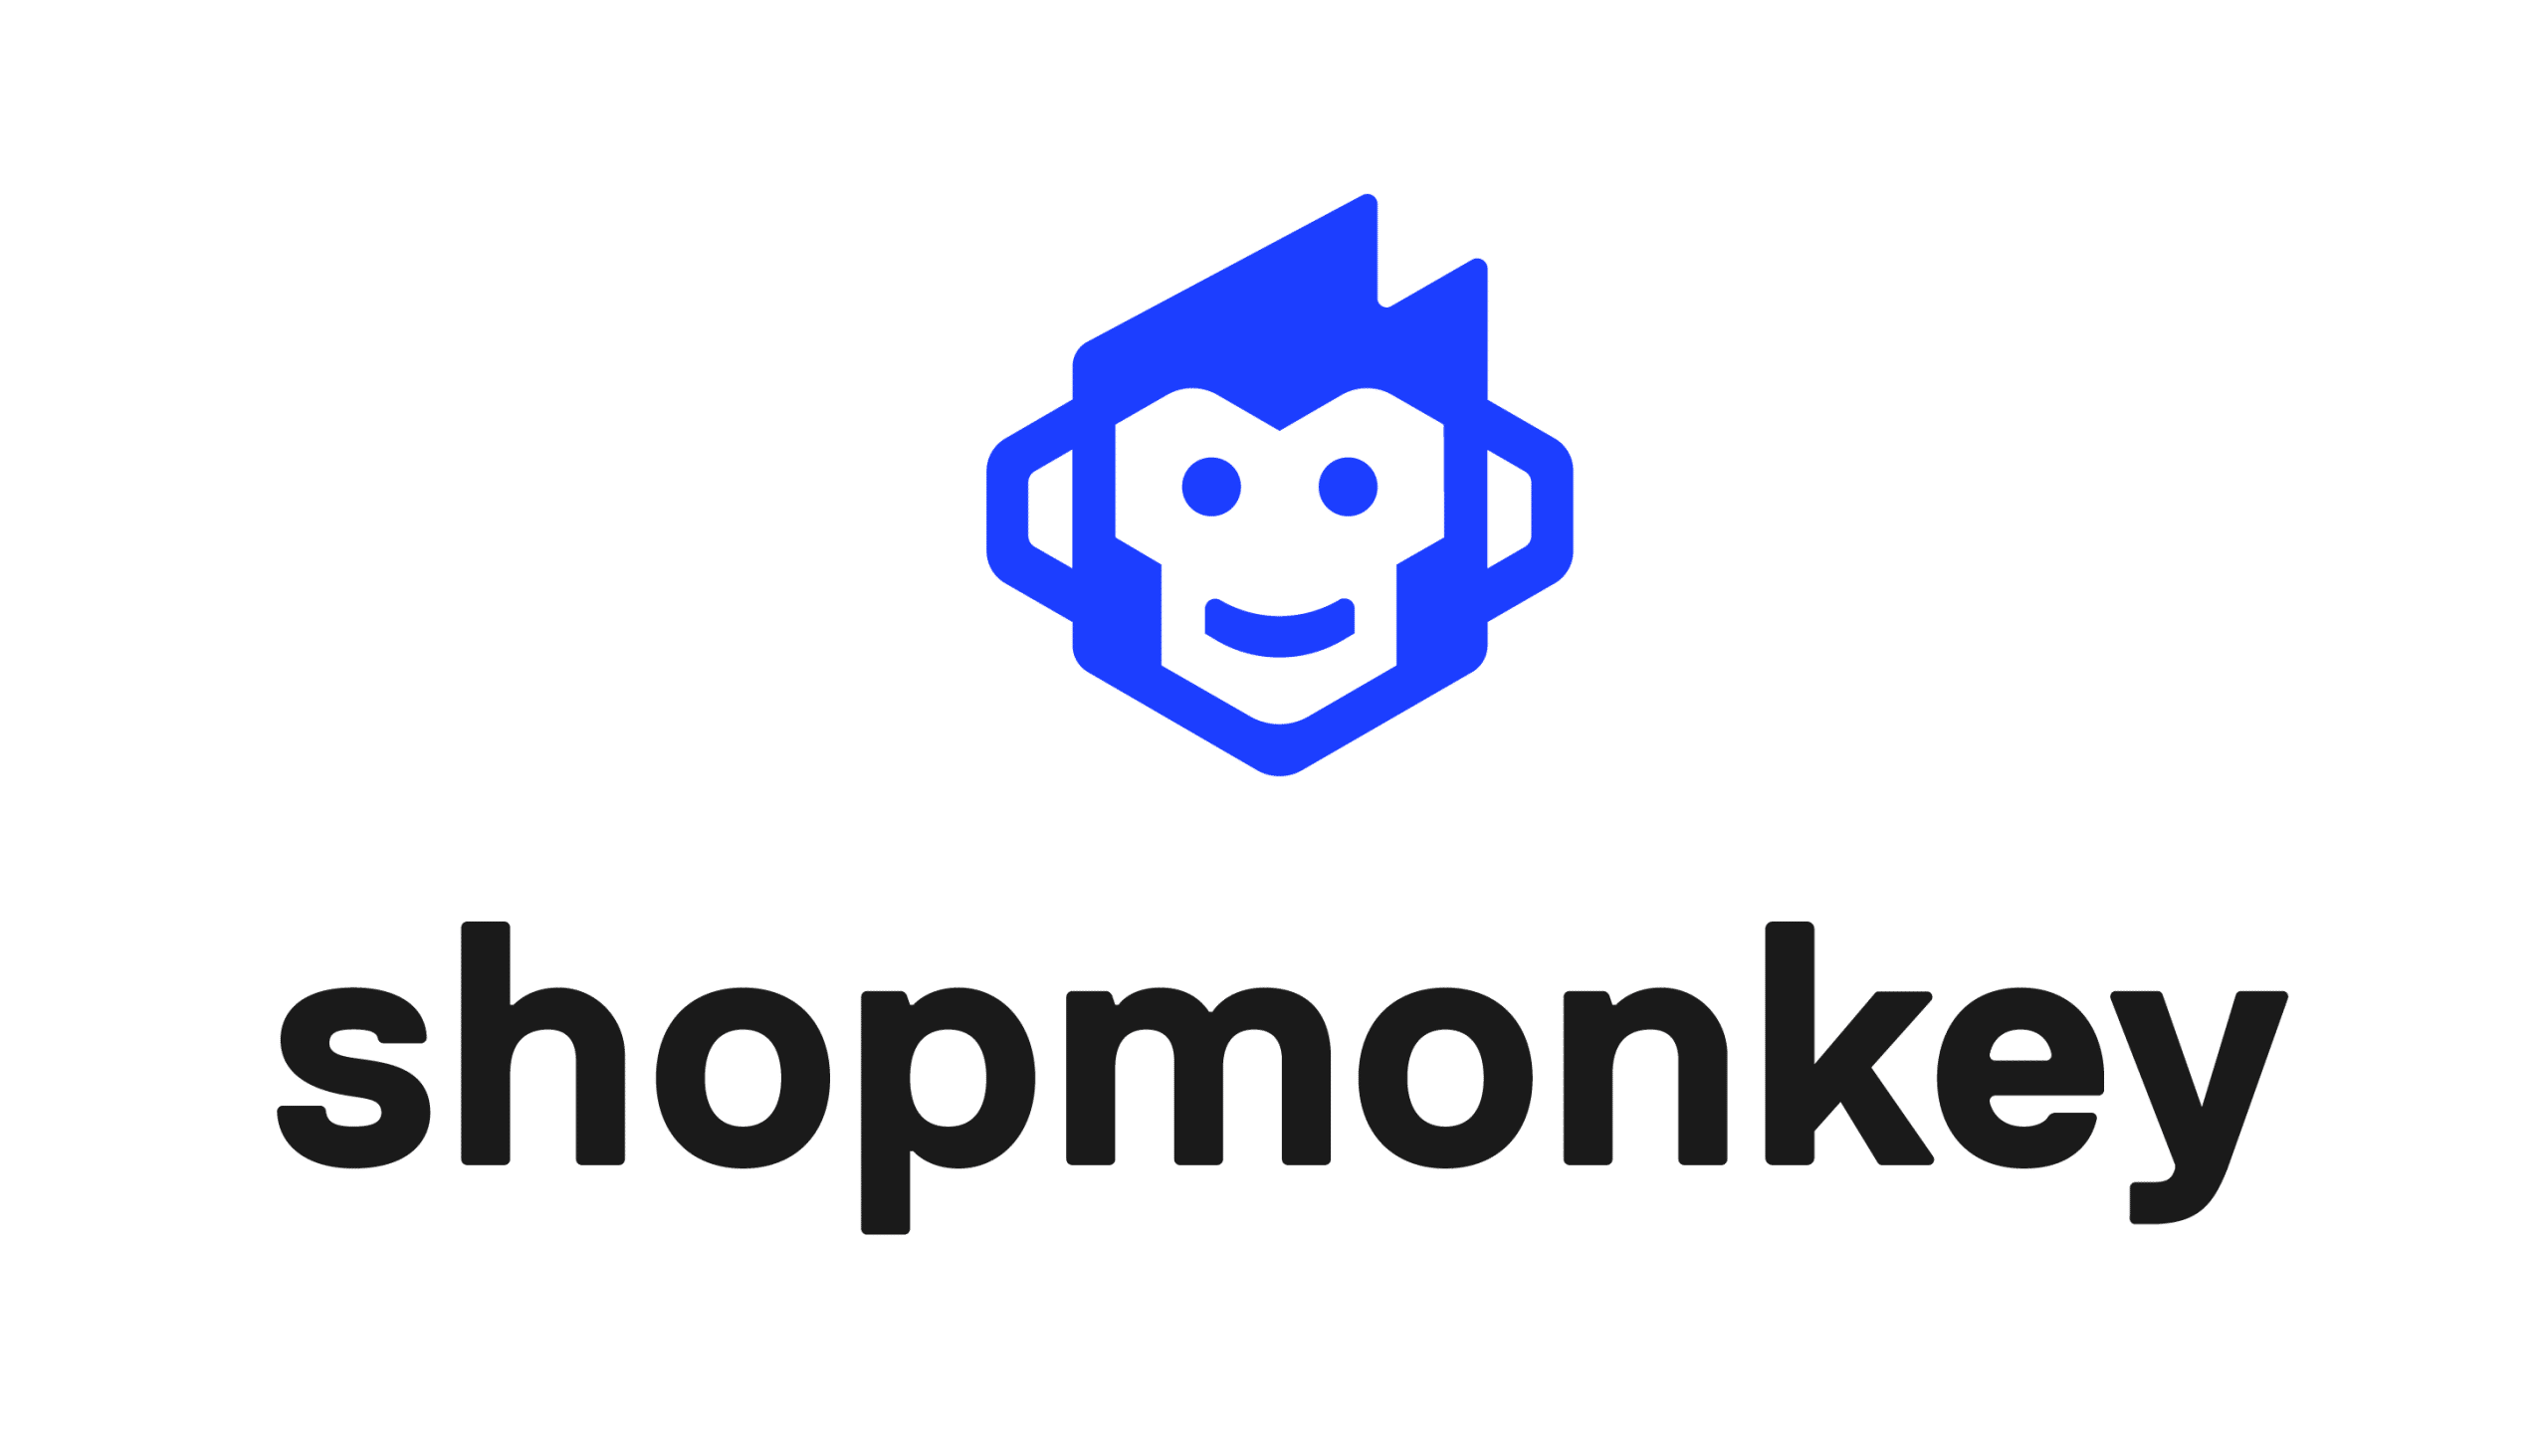 shopmonkey logo